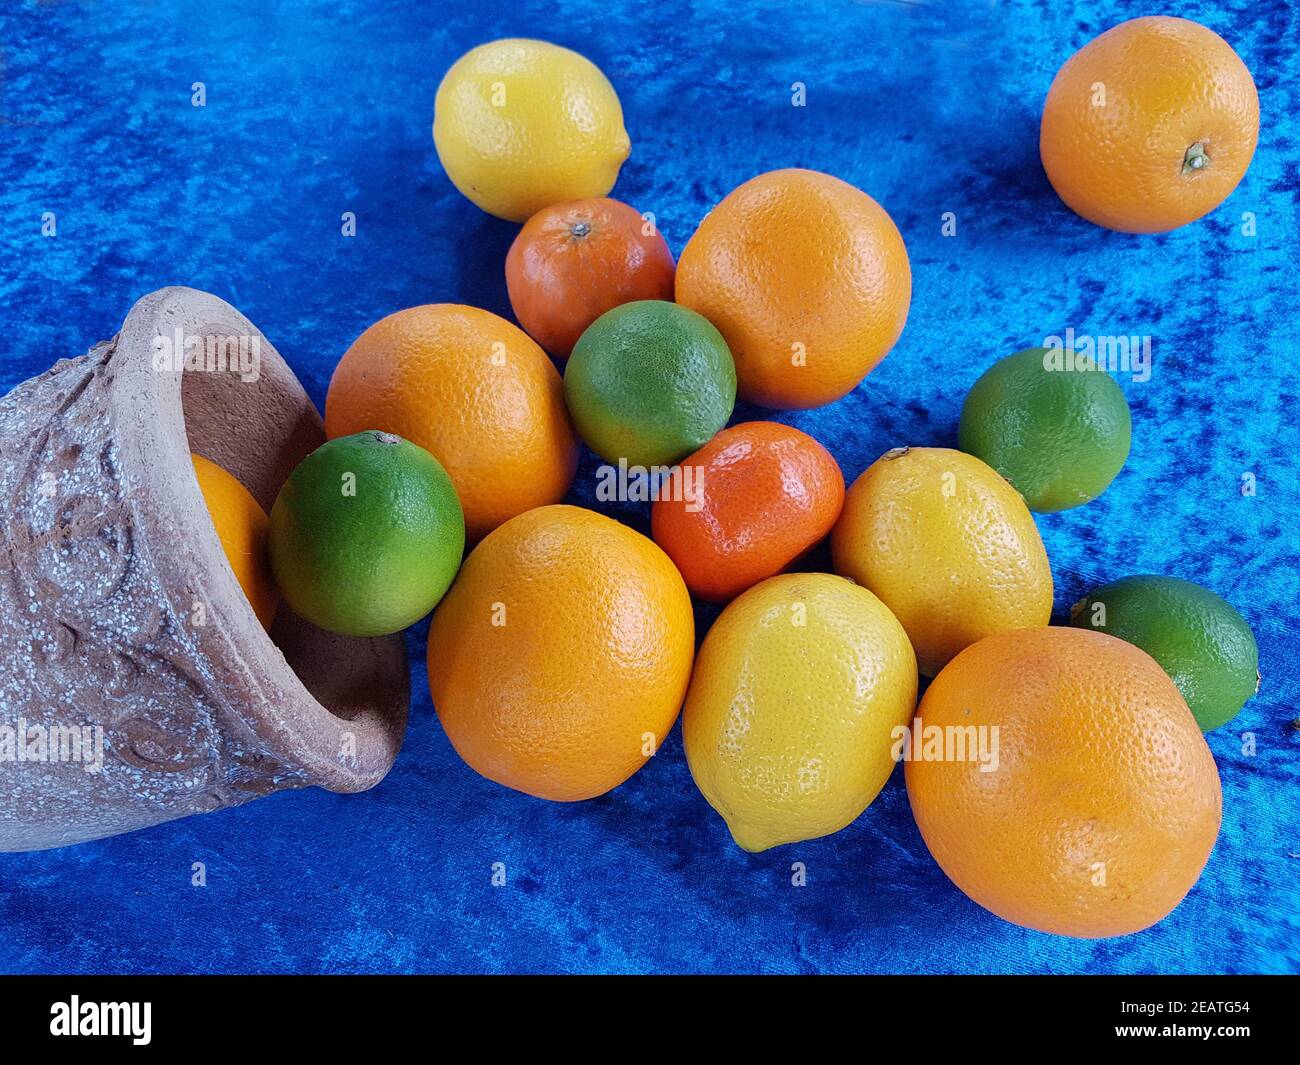 Zitrusfruechte, Zitrone, Citrus, Orangen Stock Photo